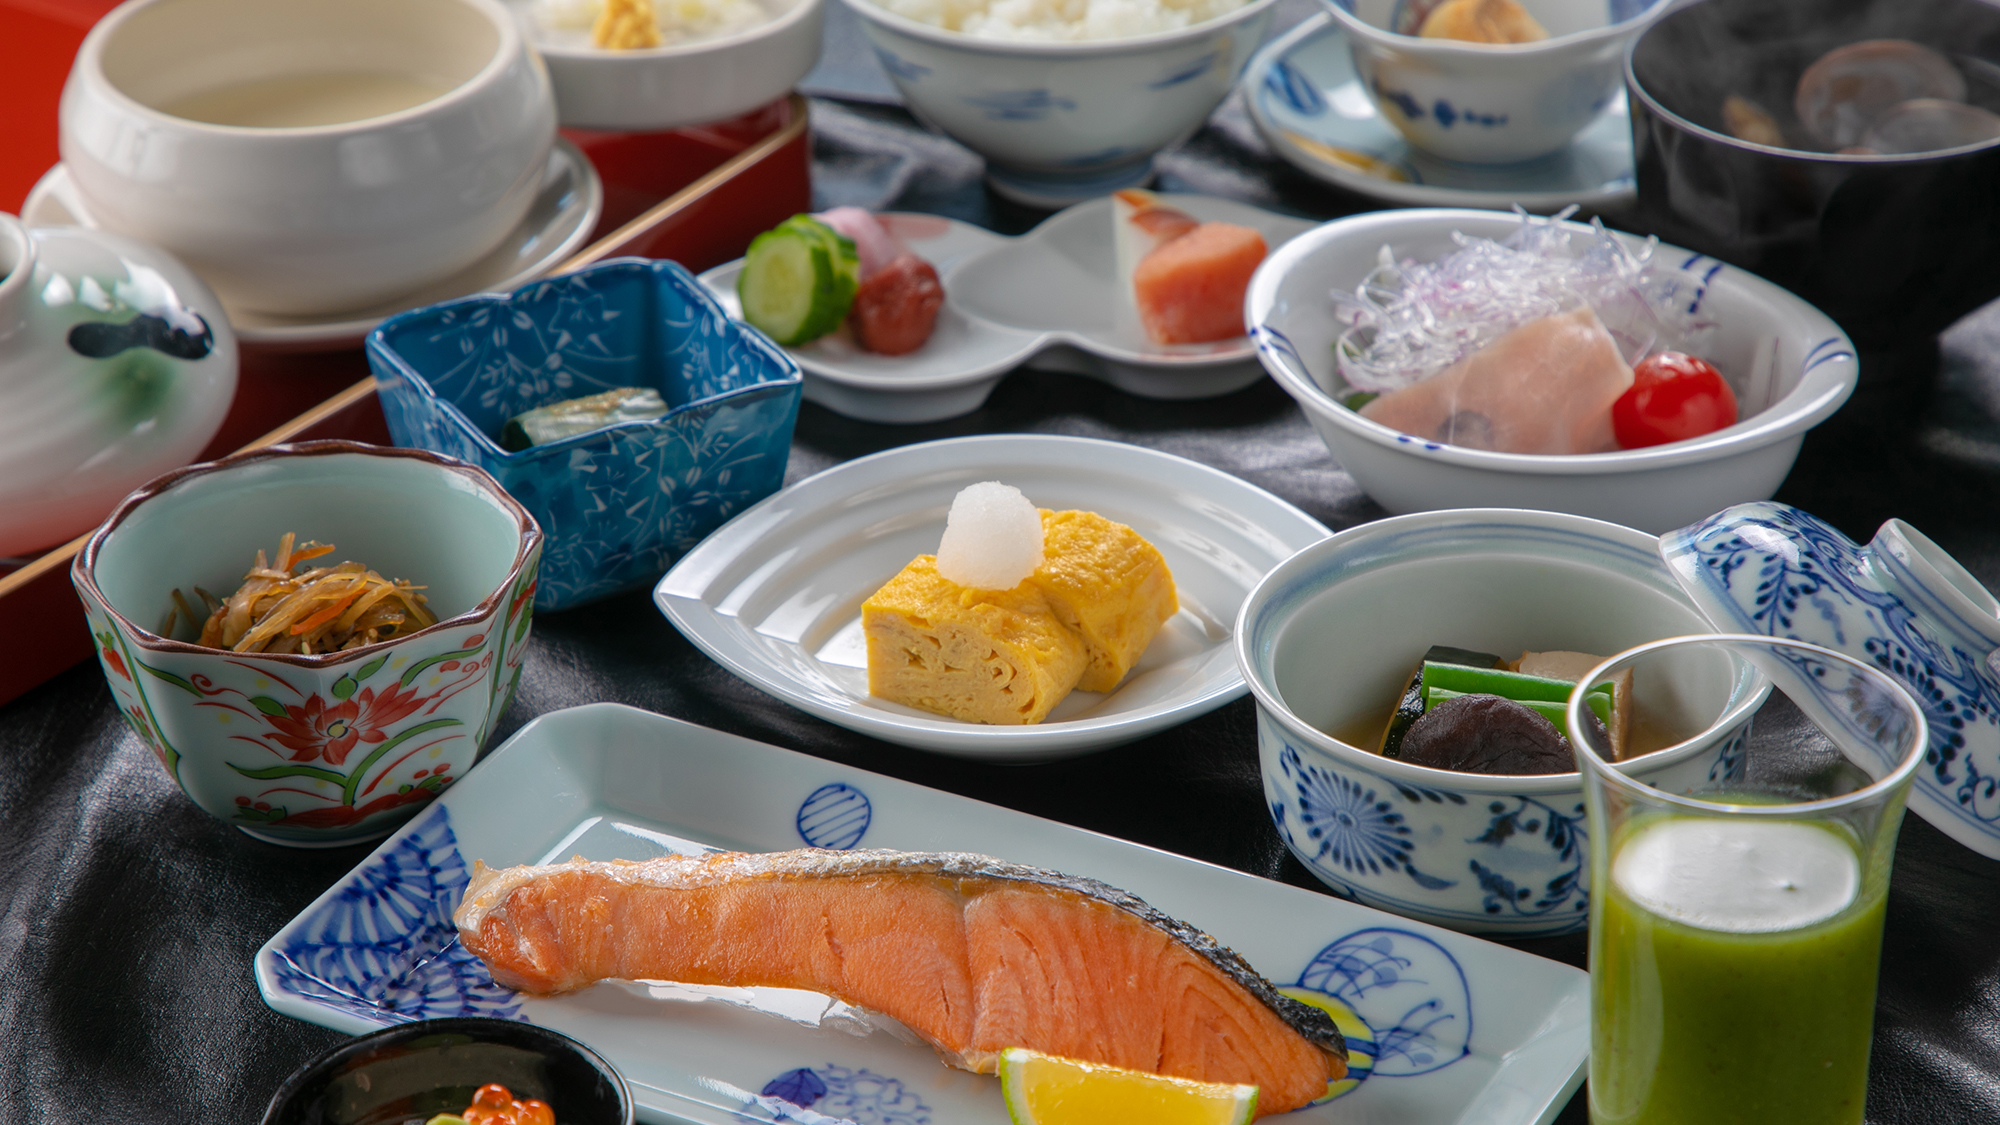 【朝食一例】気持ちの良い朝食で一日を過ごしていただけますように和食を中心としたメニューです。